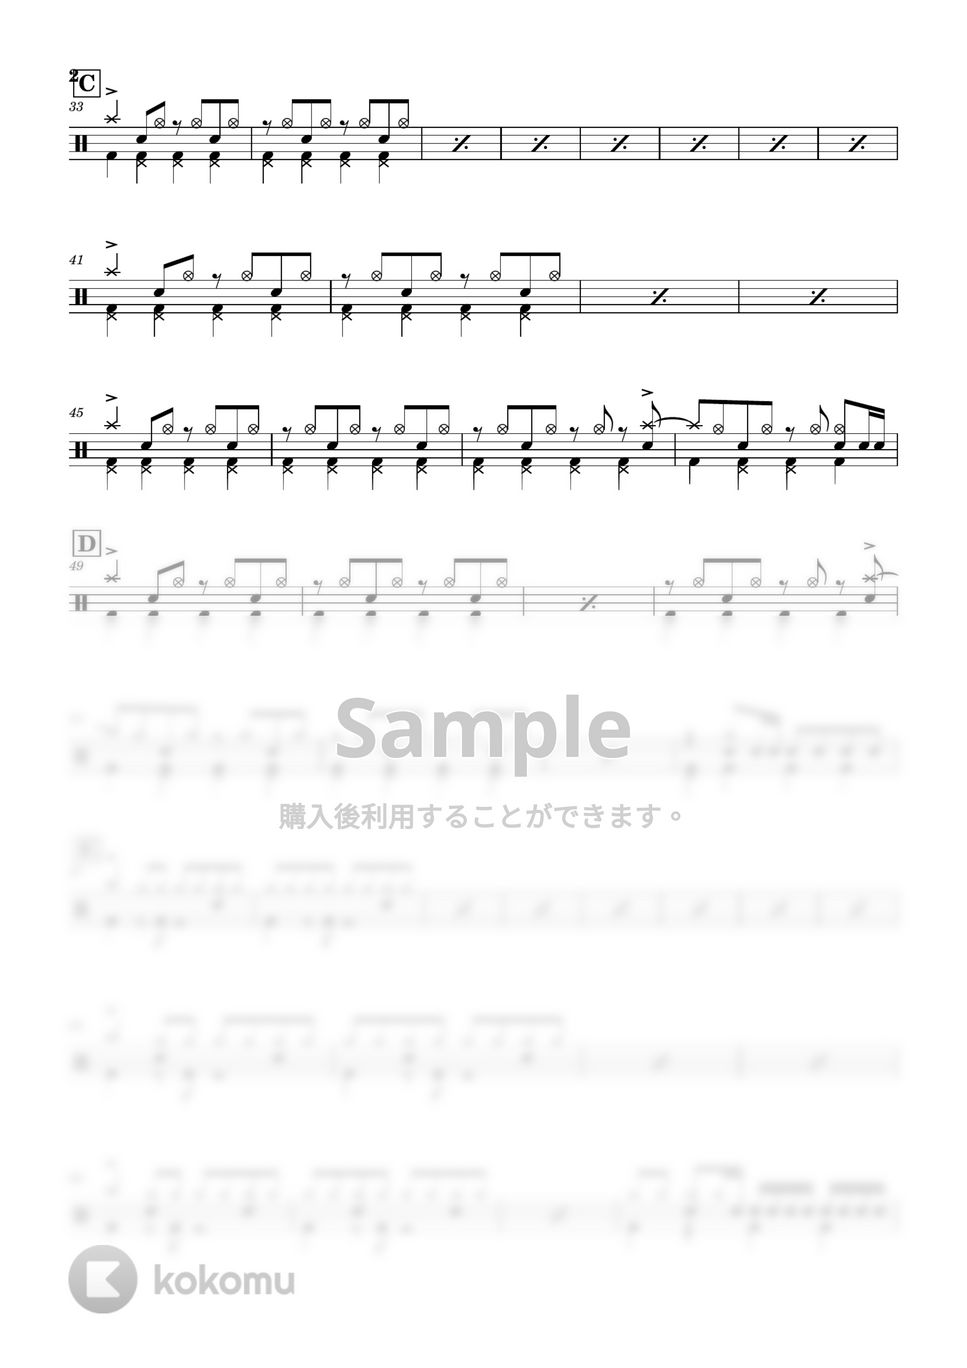 フレデリック - オドループ by Cookie's Drum Score